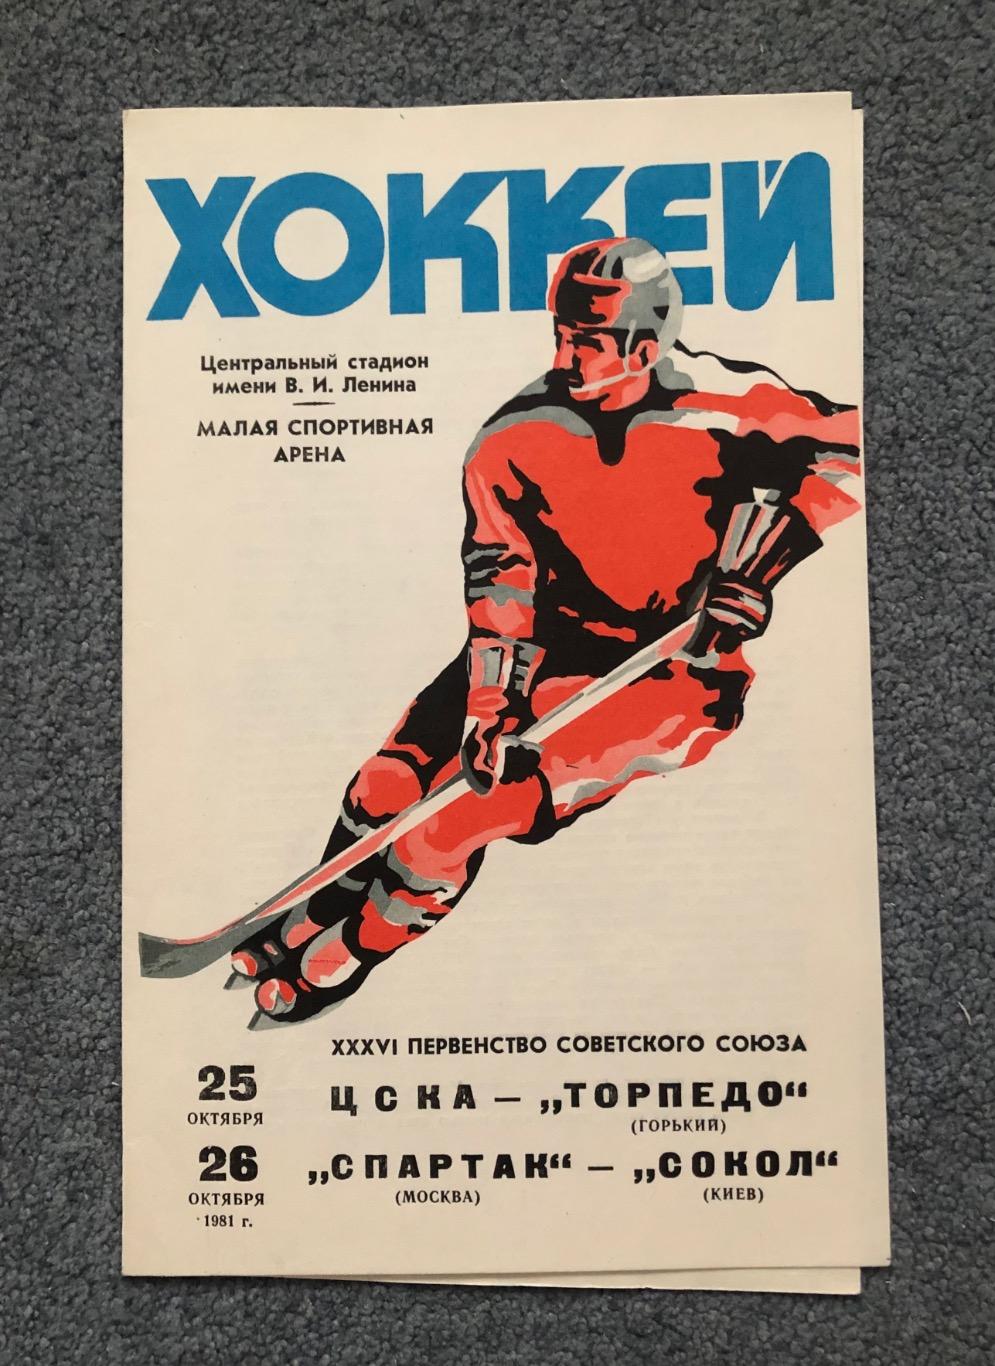 ЦСКА - Торпедо Горький, Спартак Москва - Сокол Киев, 25 и 26.10.1981